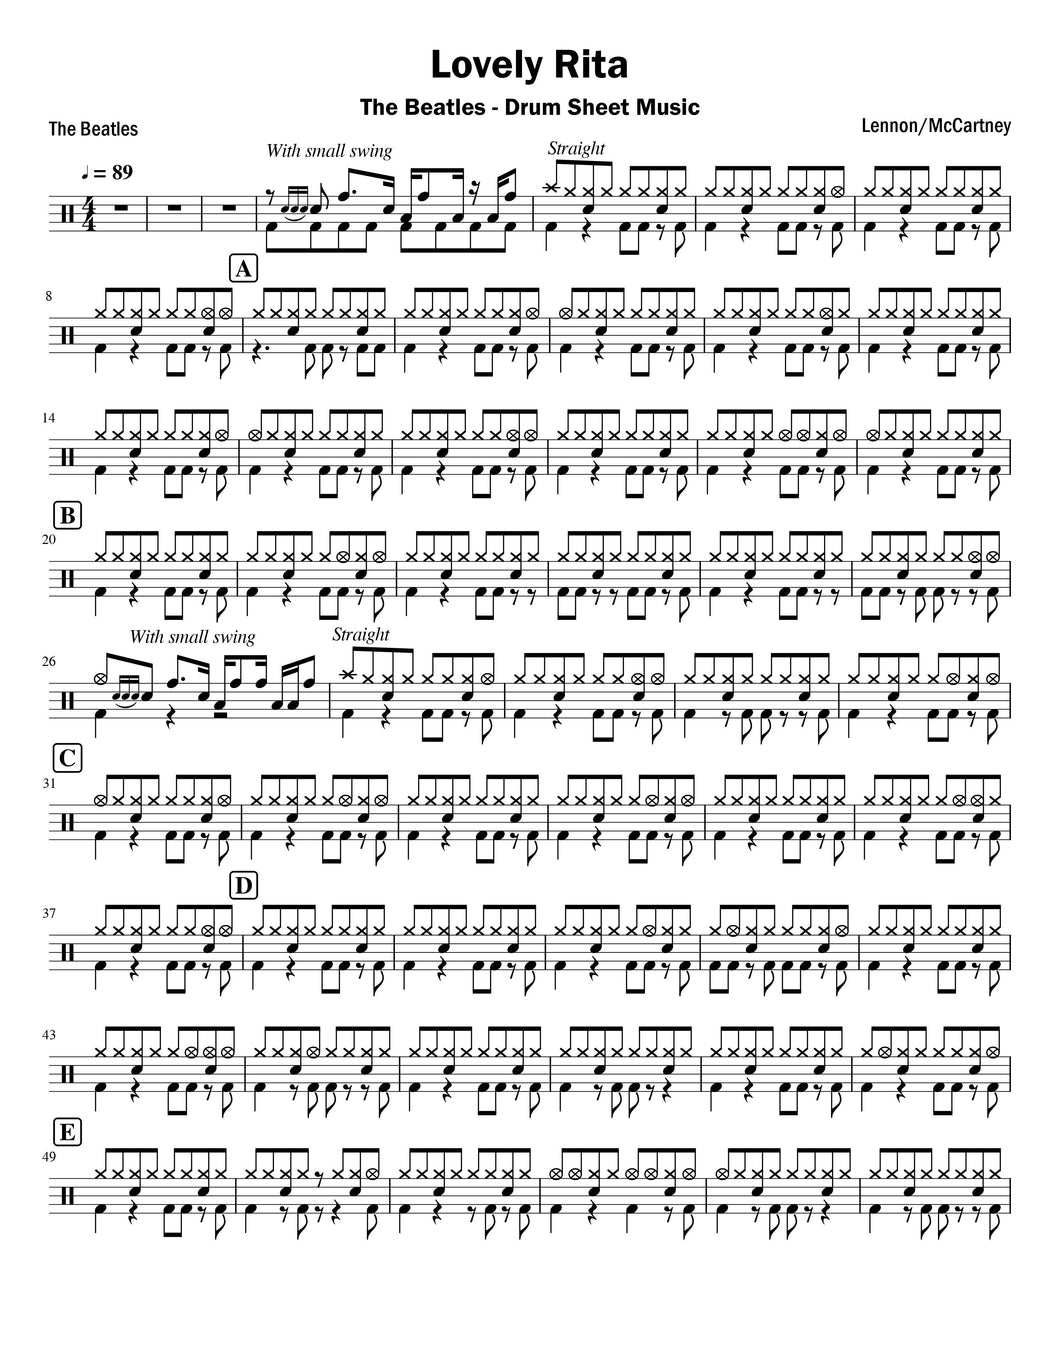 Lovely Rita - The Beatles - Full Drum Transcription / Drum Sheet Music - Vince’s Scores